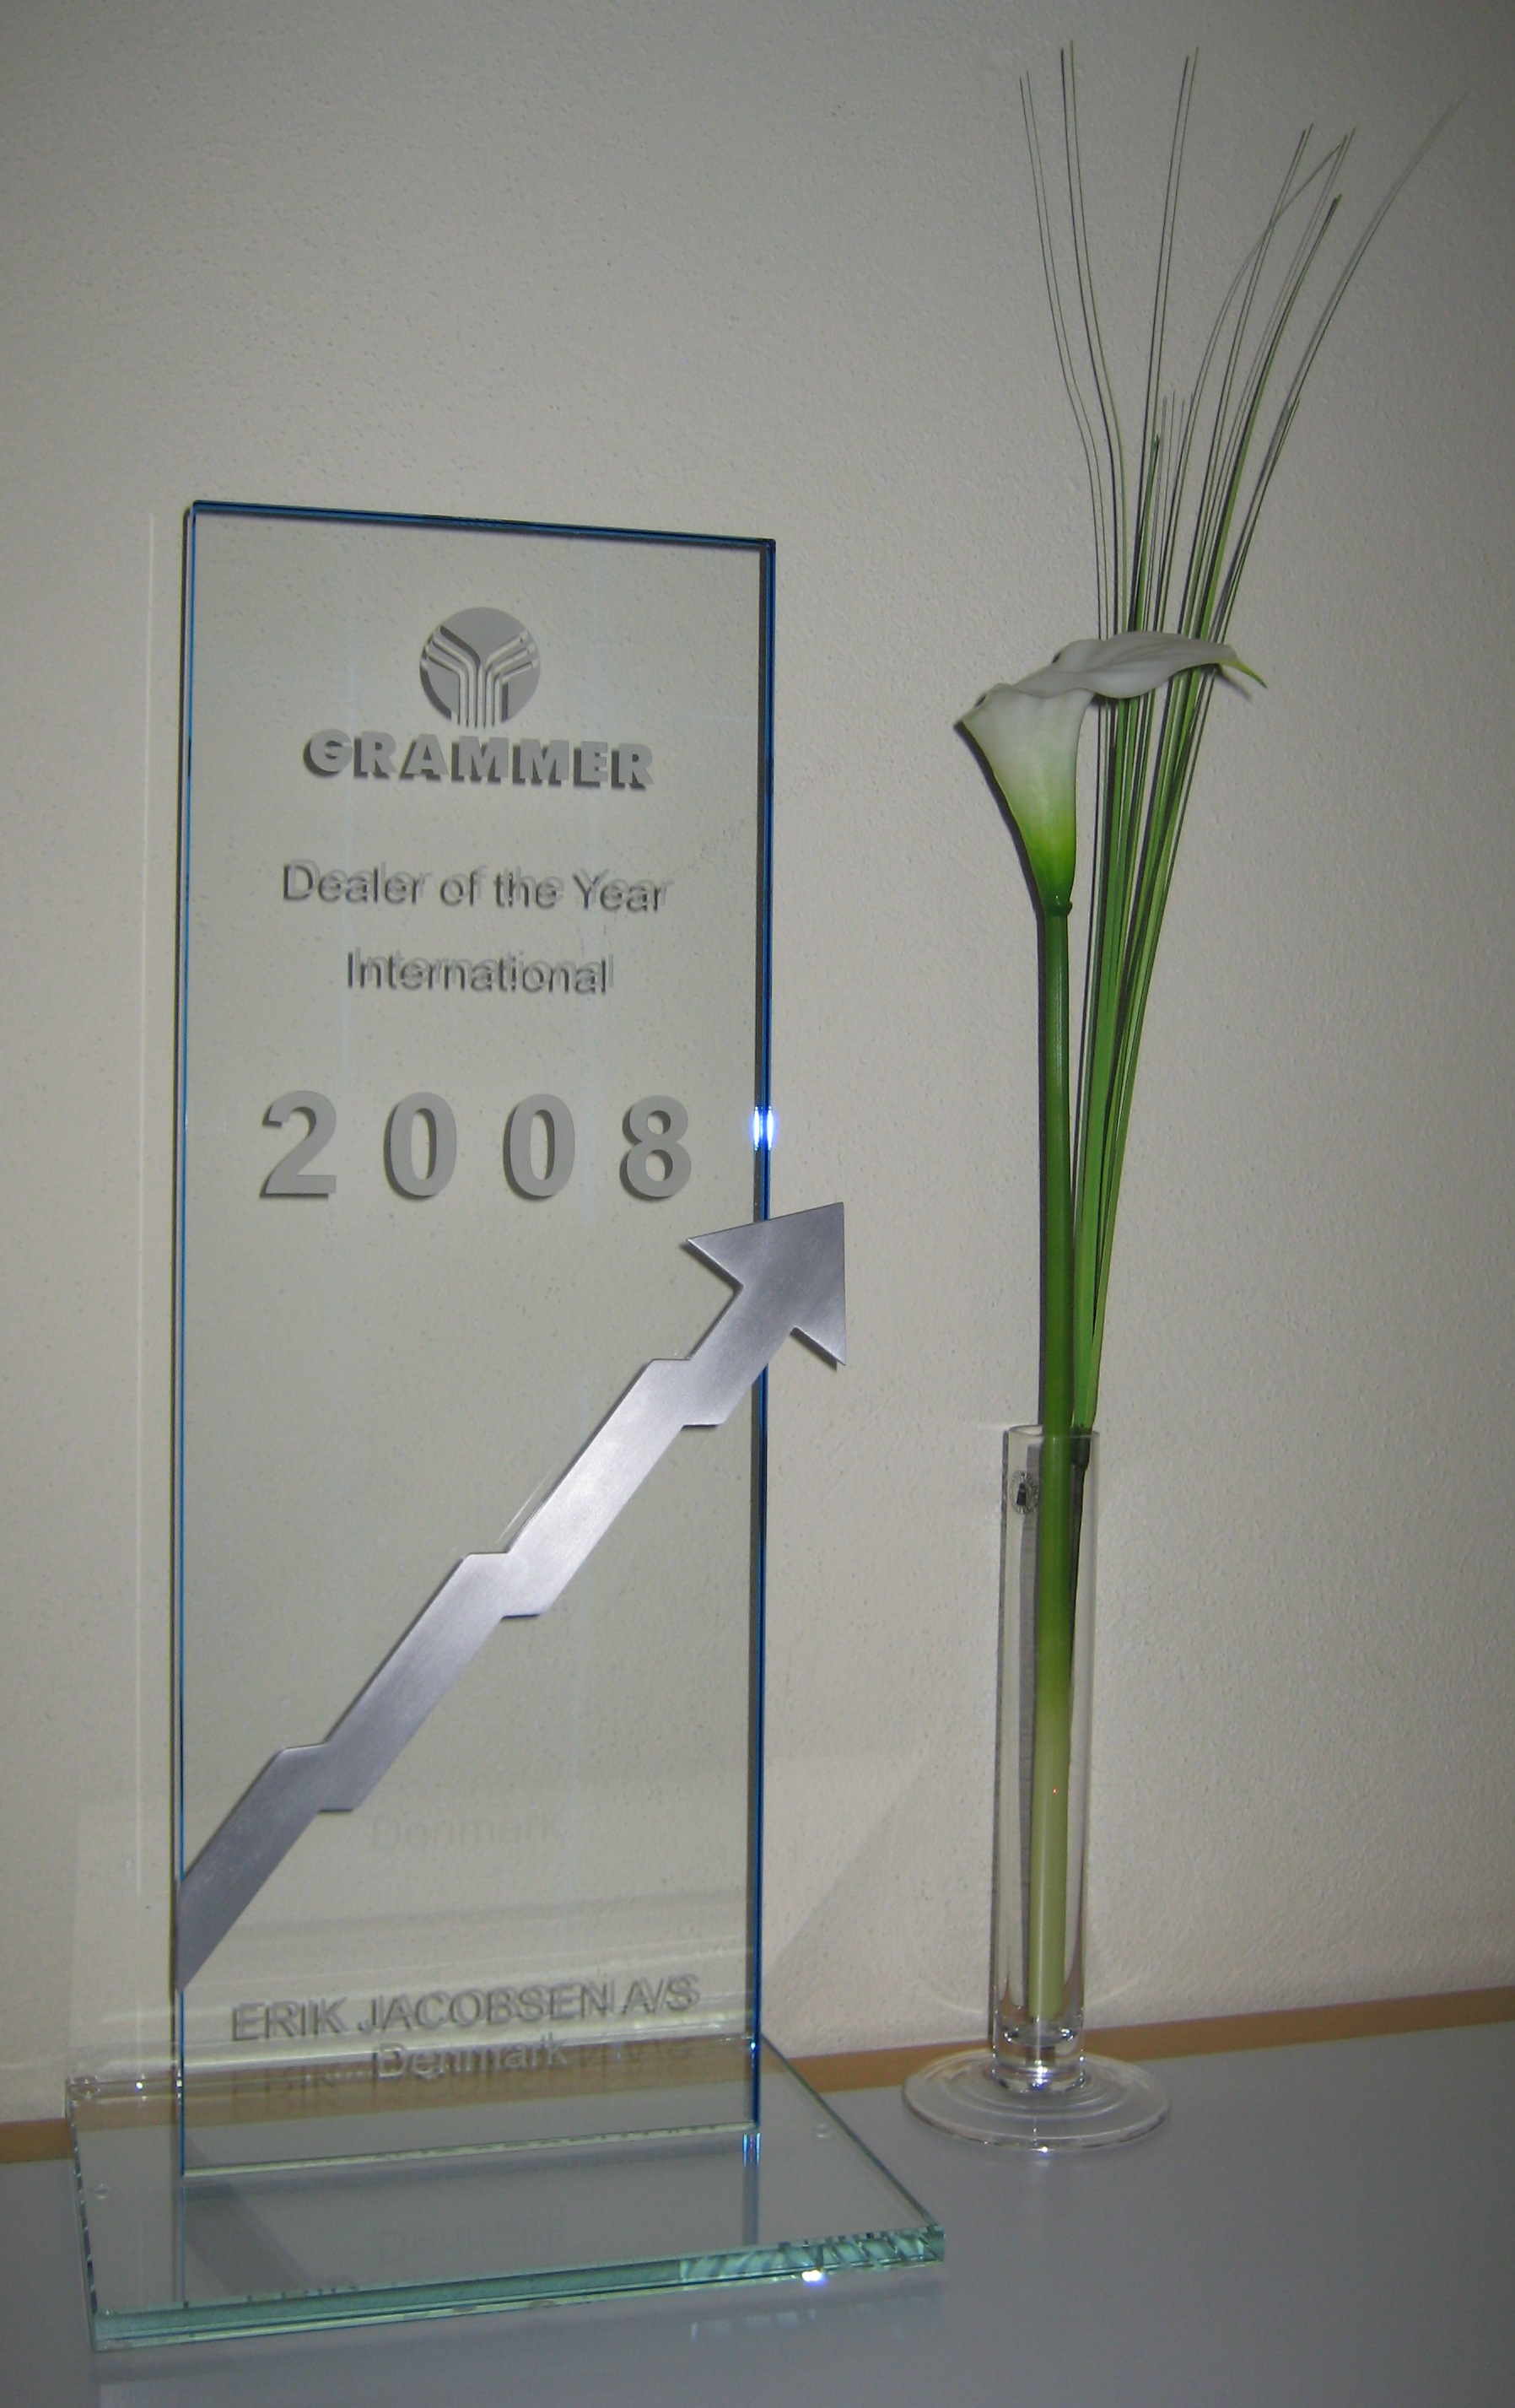 GRAMMER Awards 2008